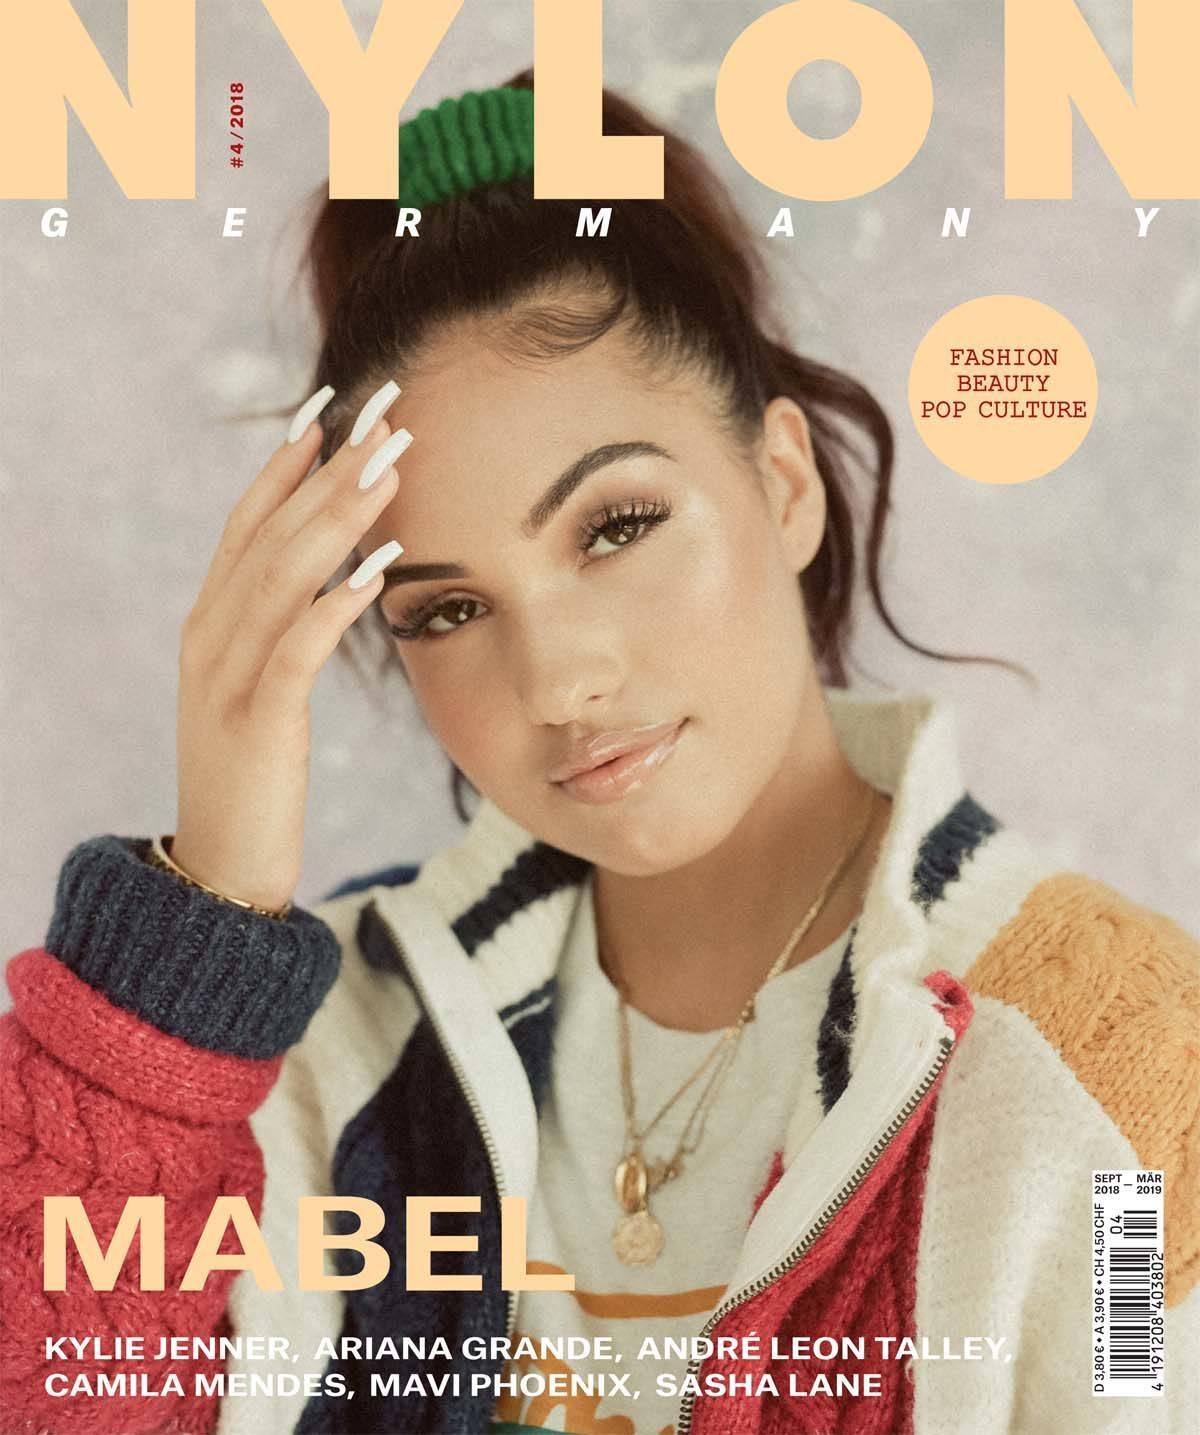 Das Cover der deutschen "Nylon"-Ausgabe (Nr. 4/2018).